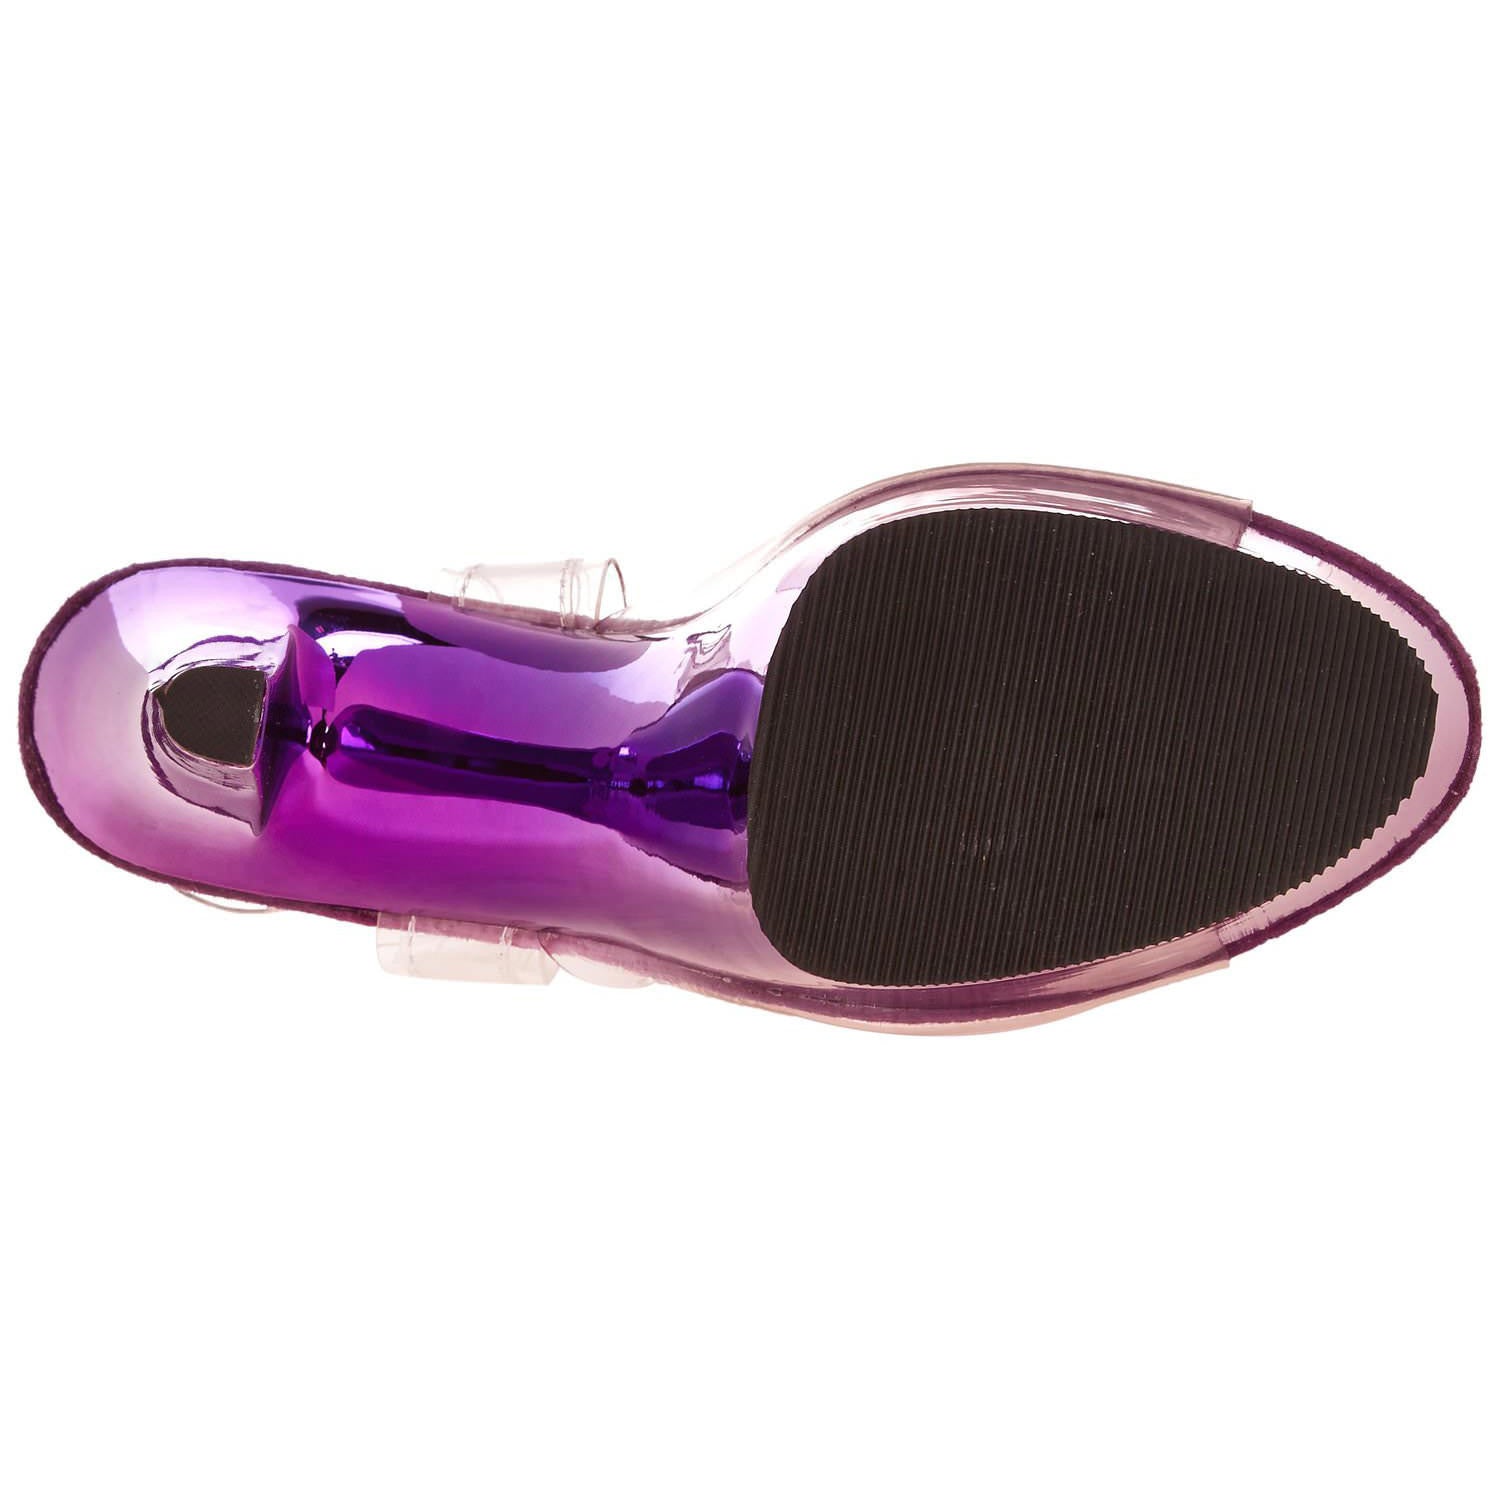 PLEASER SKY-308 Clear-Purple Chrome Ankle Strap Sandals - Shoecup.com - 8